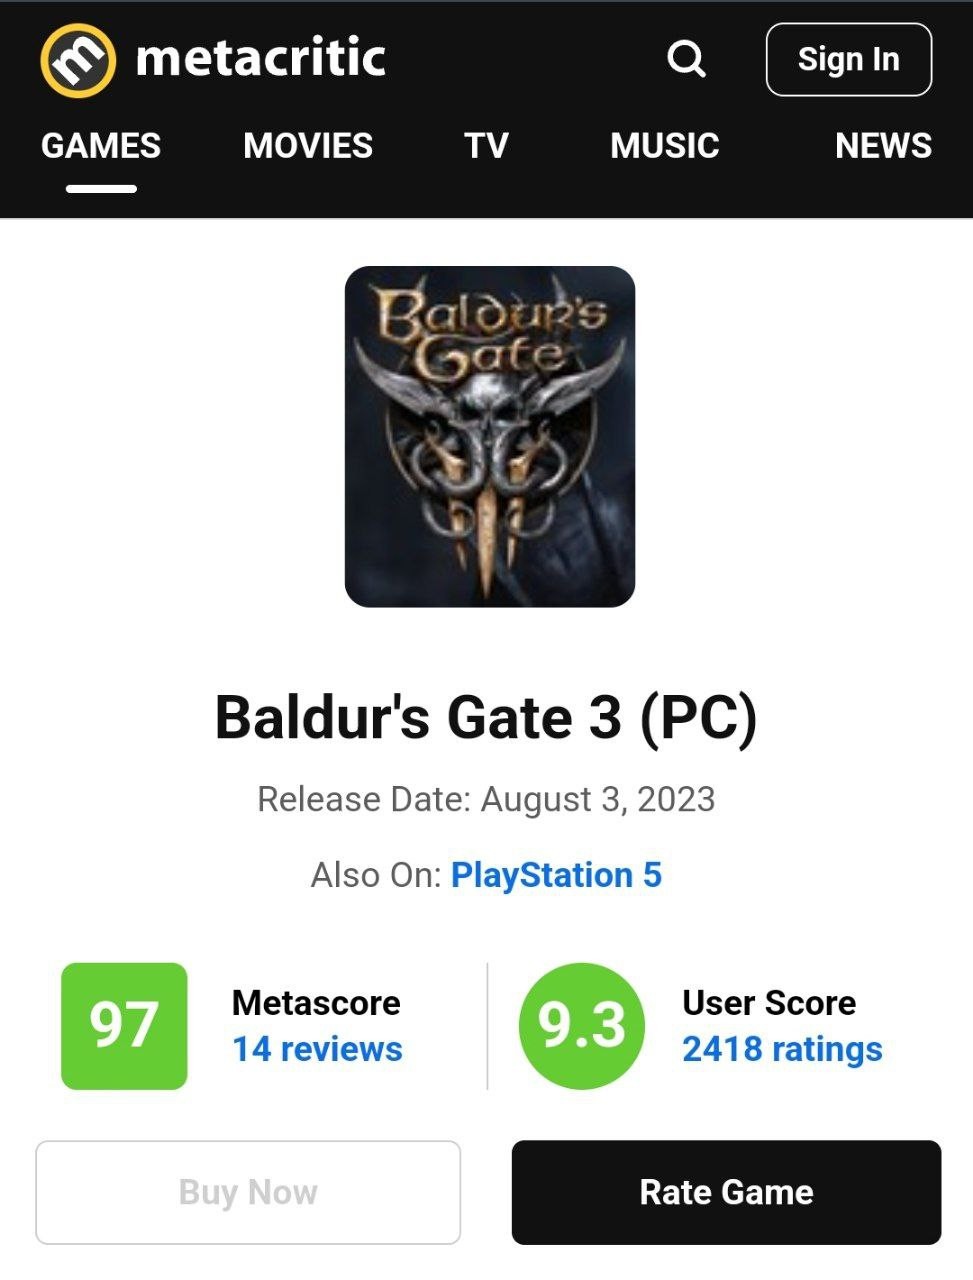 Versão PC de Persona 5 Royal se tornou o jogo mais bem avaliado no  Metacritic, superando